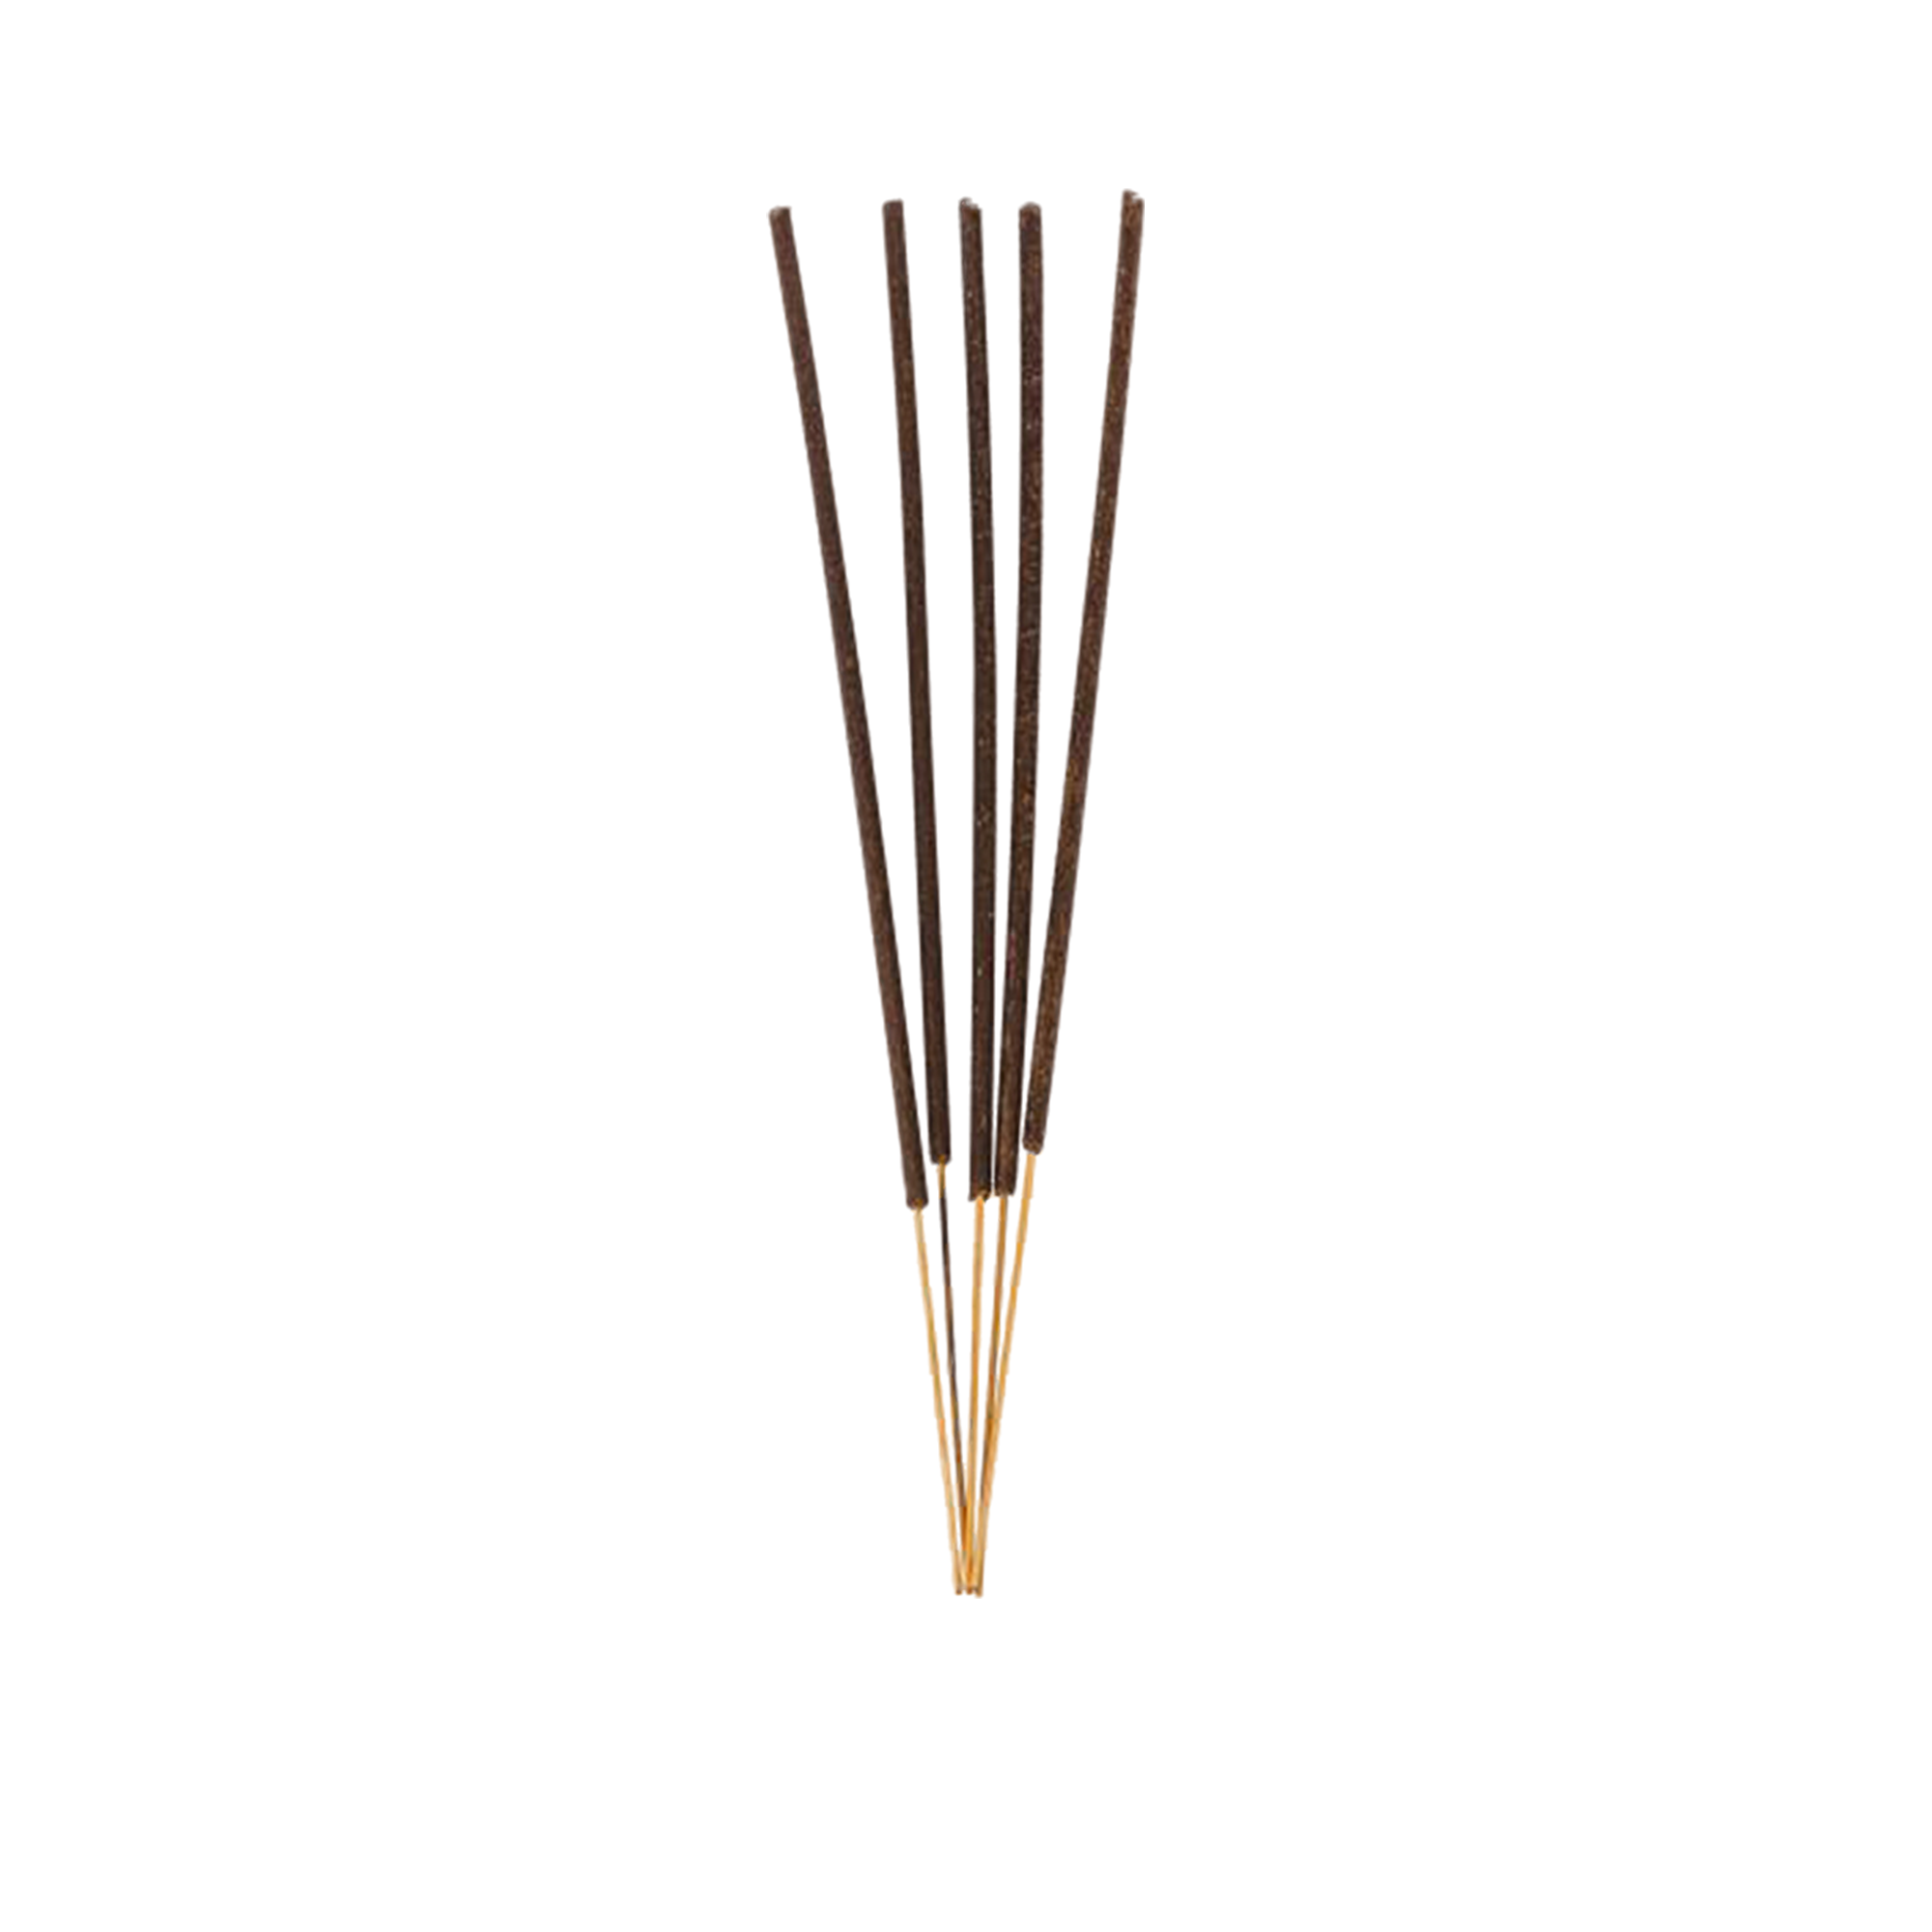 Bergamotto Di Calabria Incense Stick Set of 20